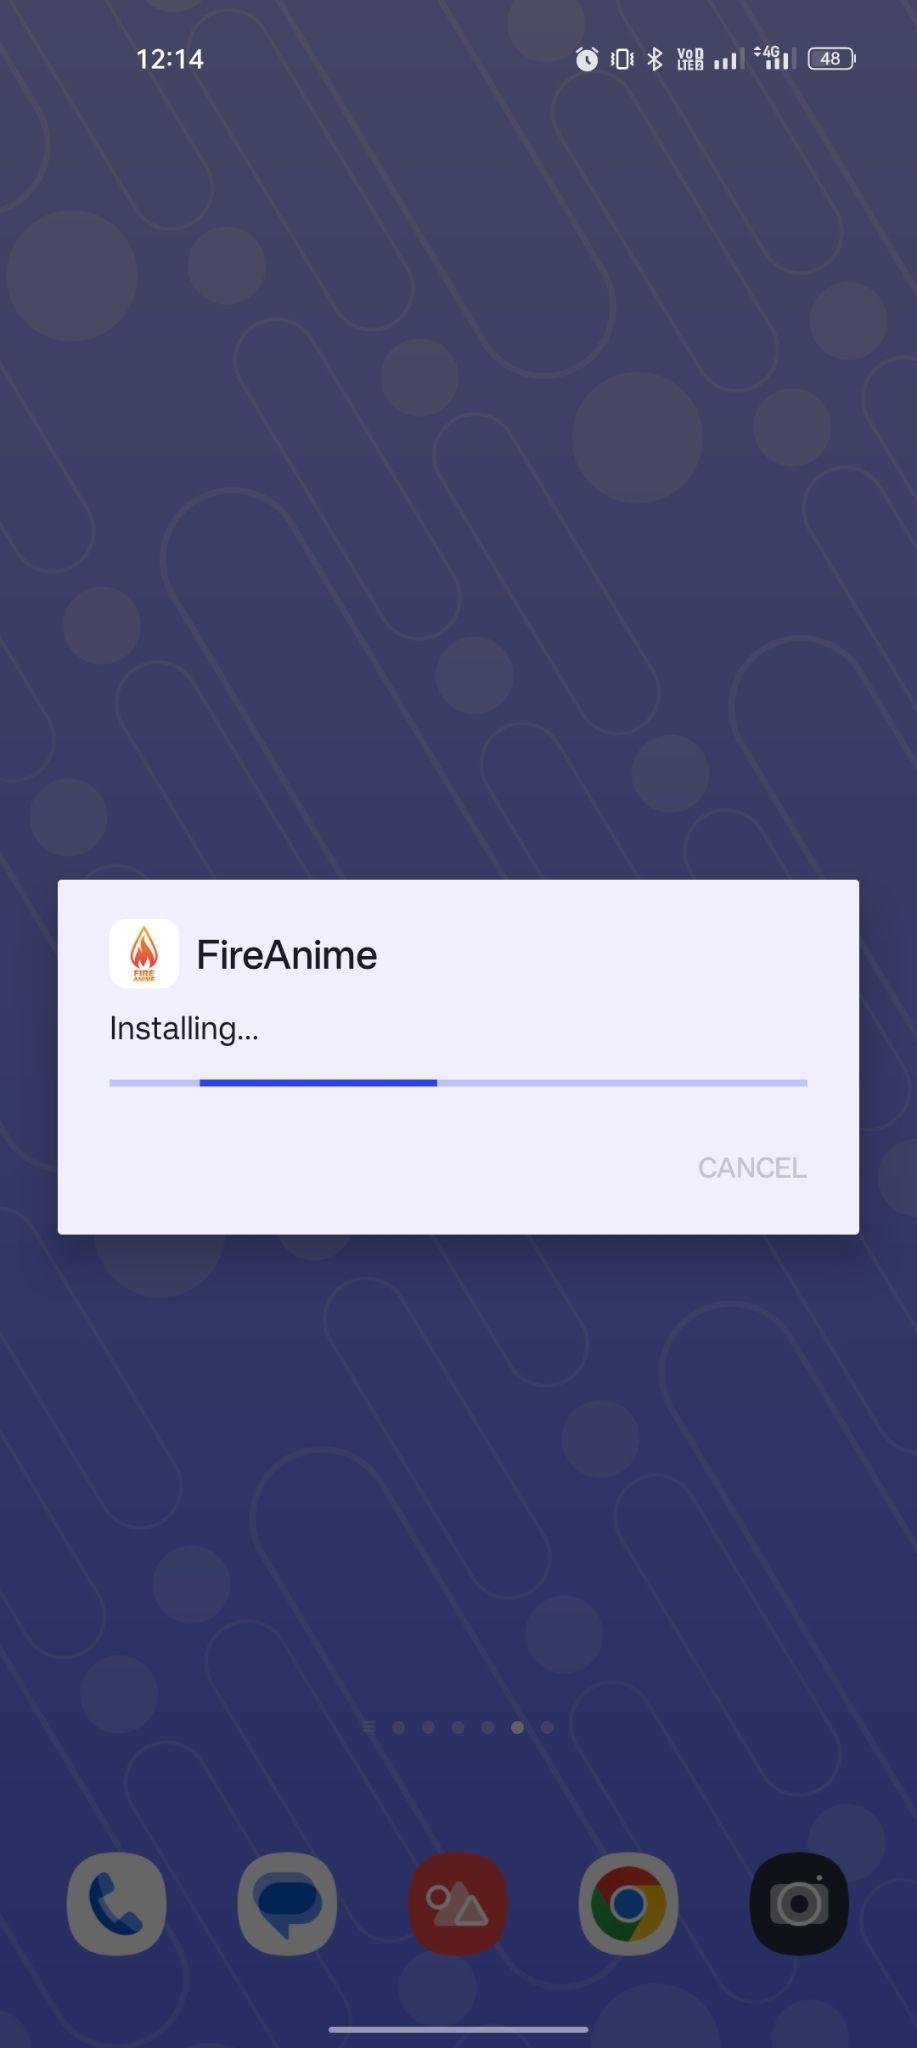 FireAnime apk installing